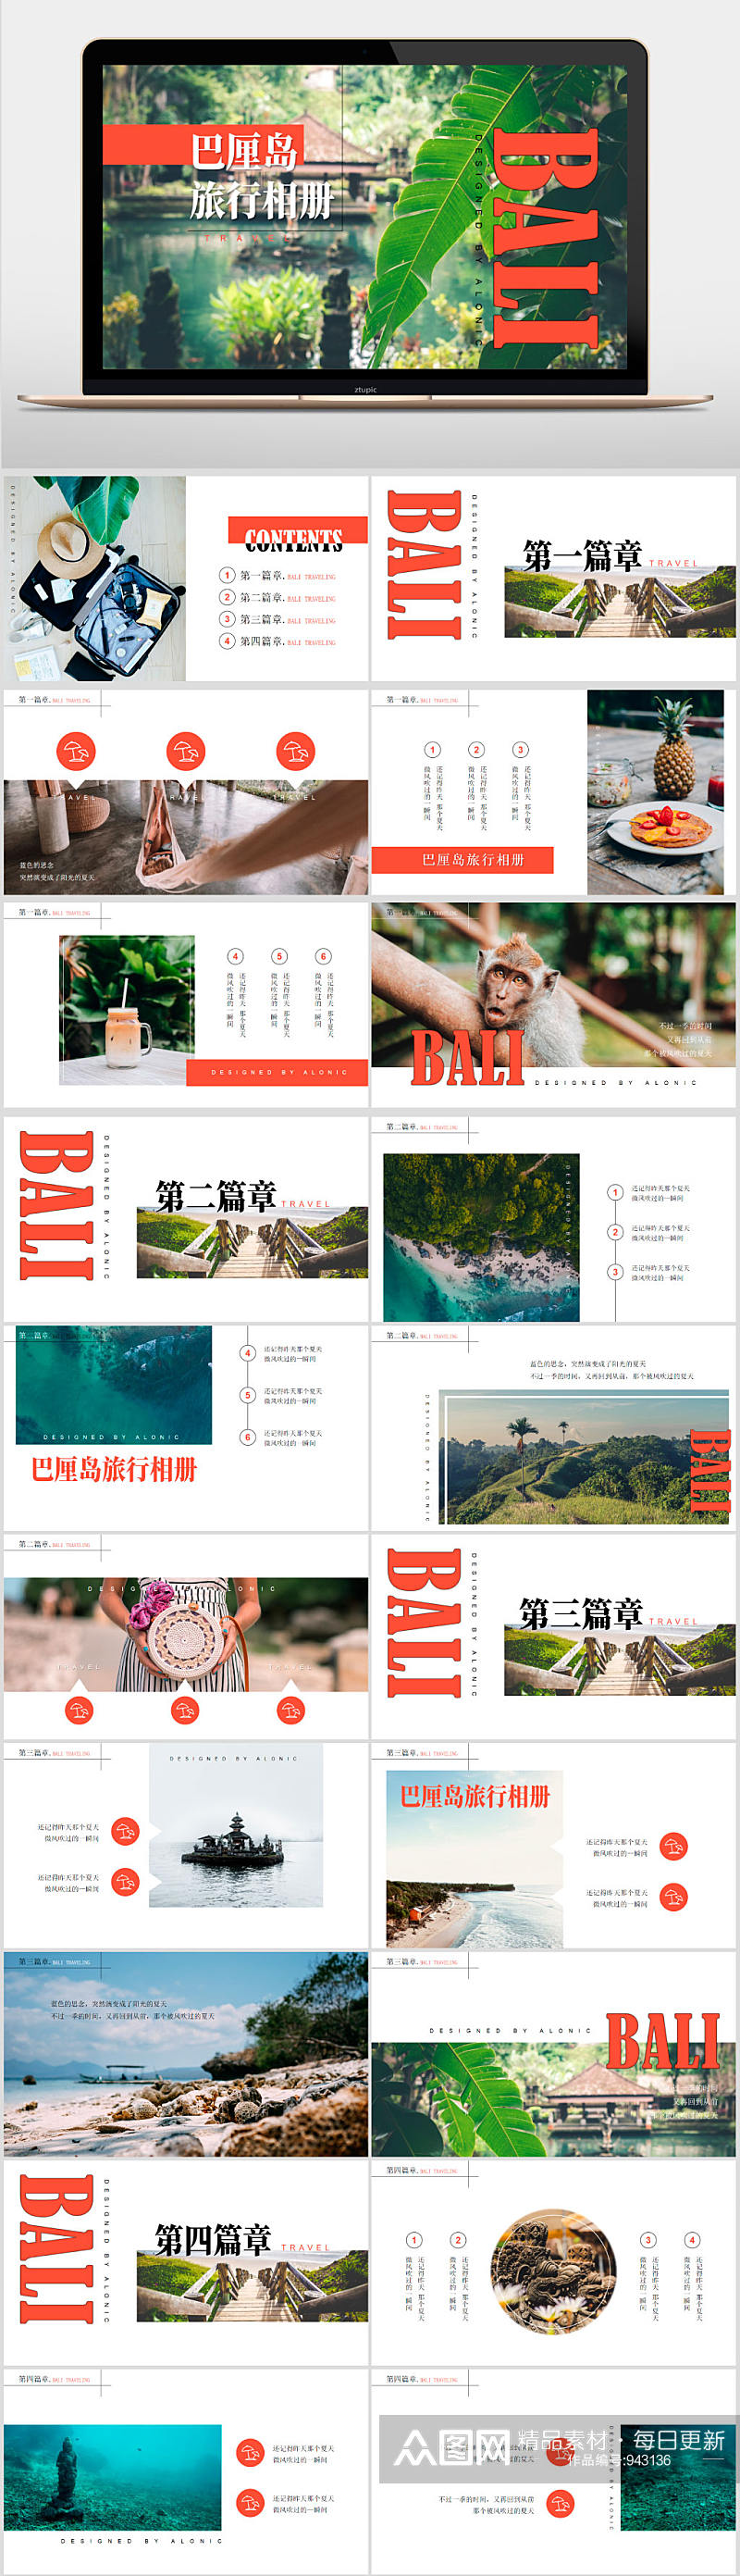 小清新杂志风巴厘岛旅行相册PPT模板素材